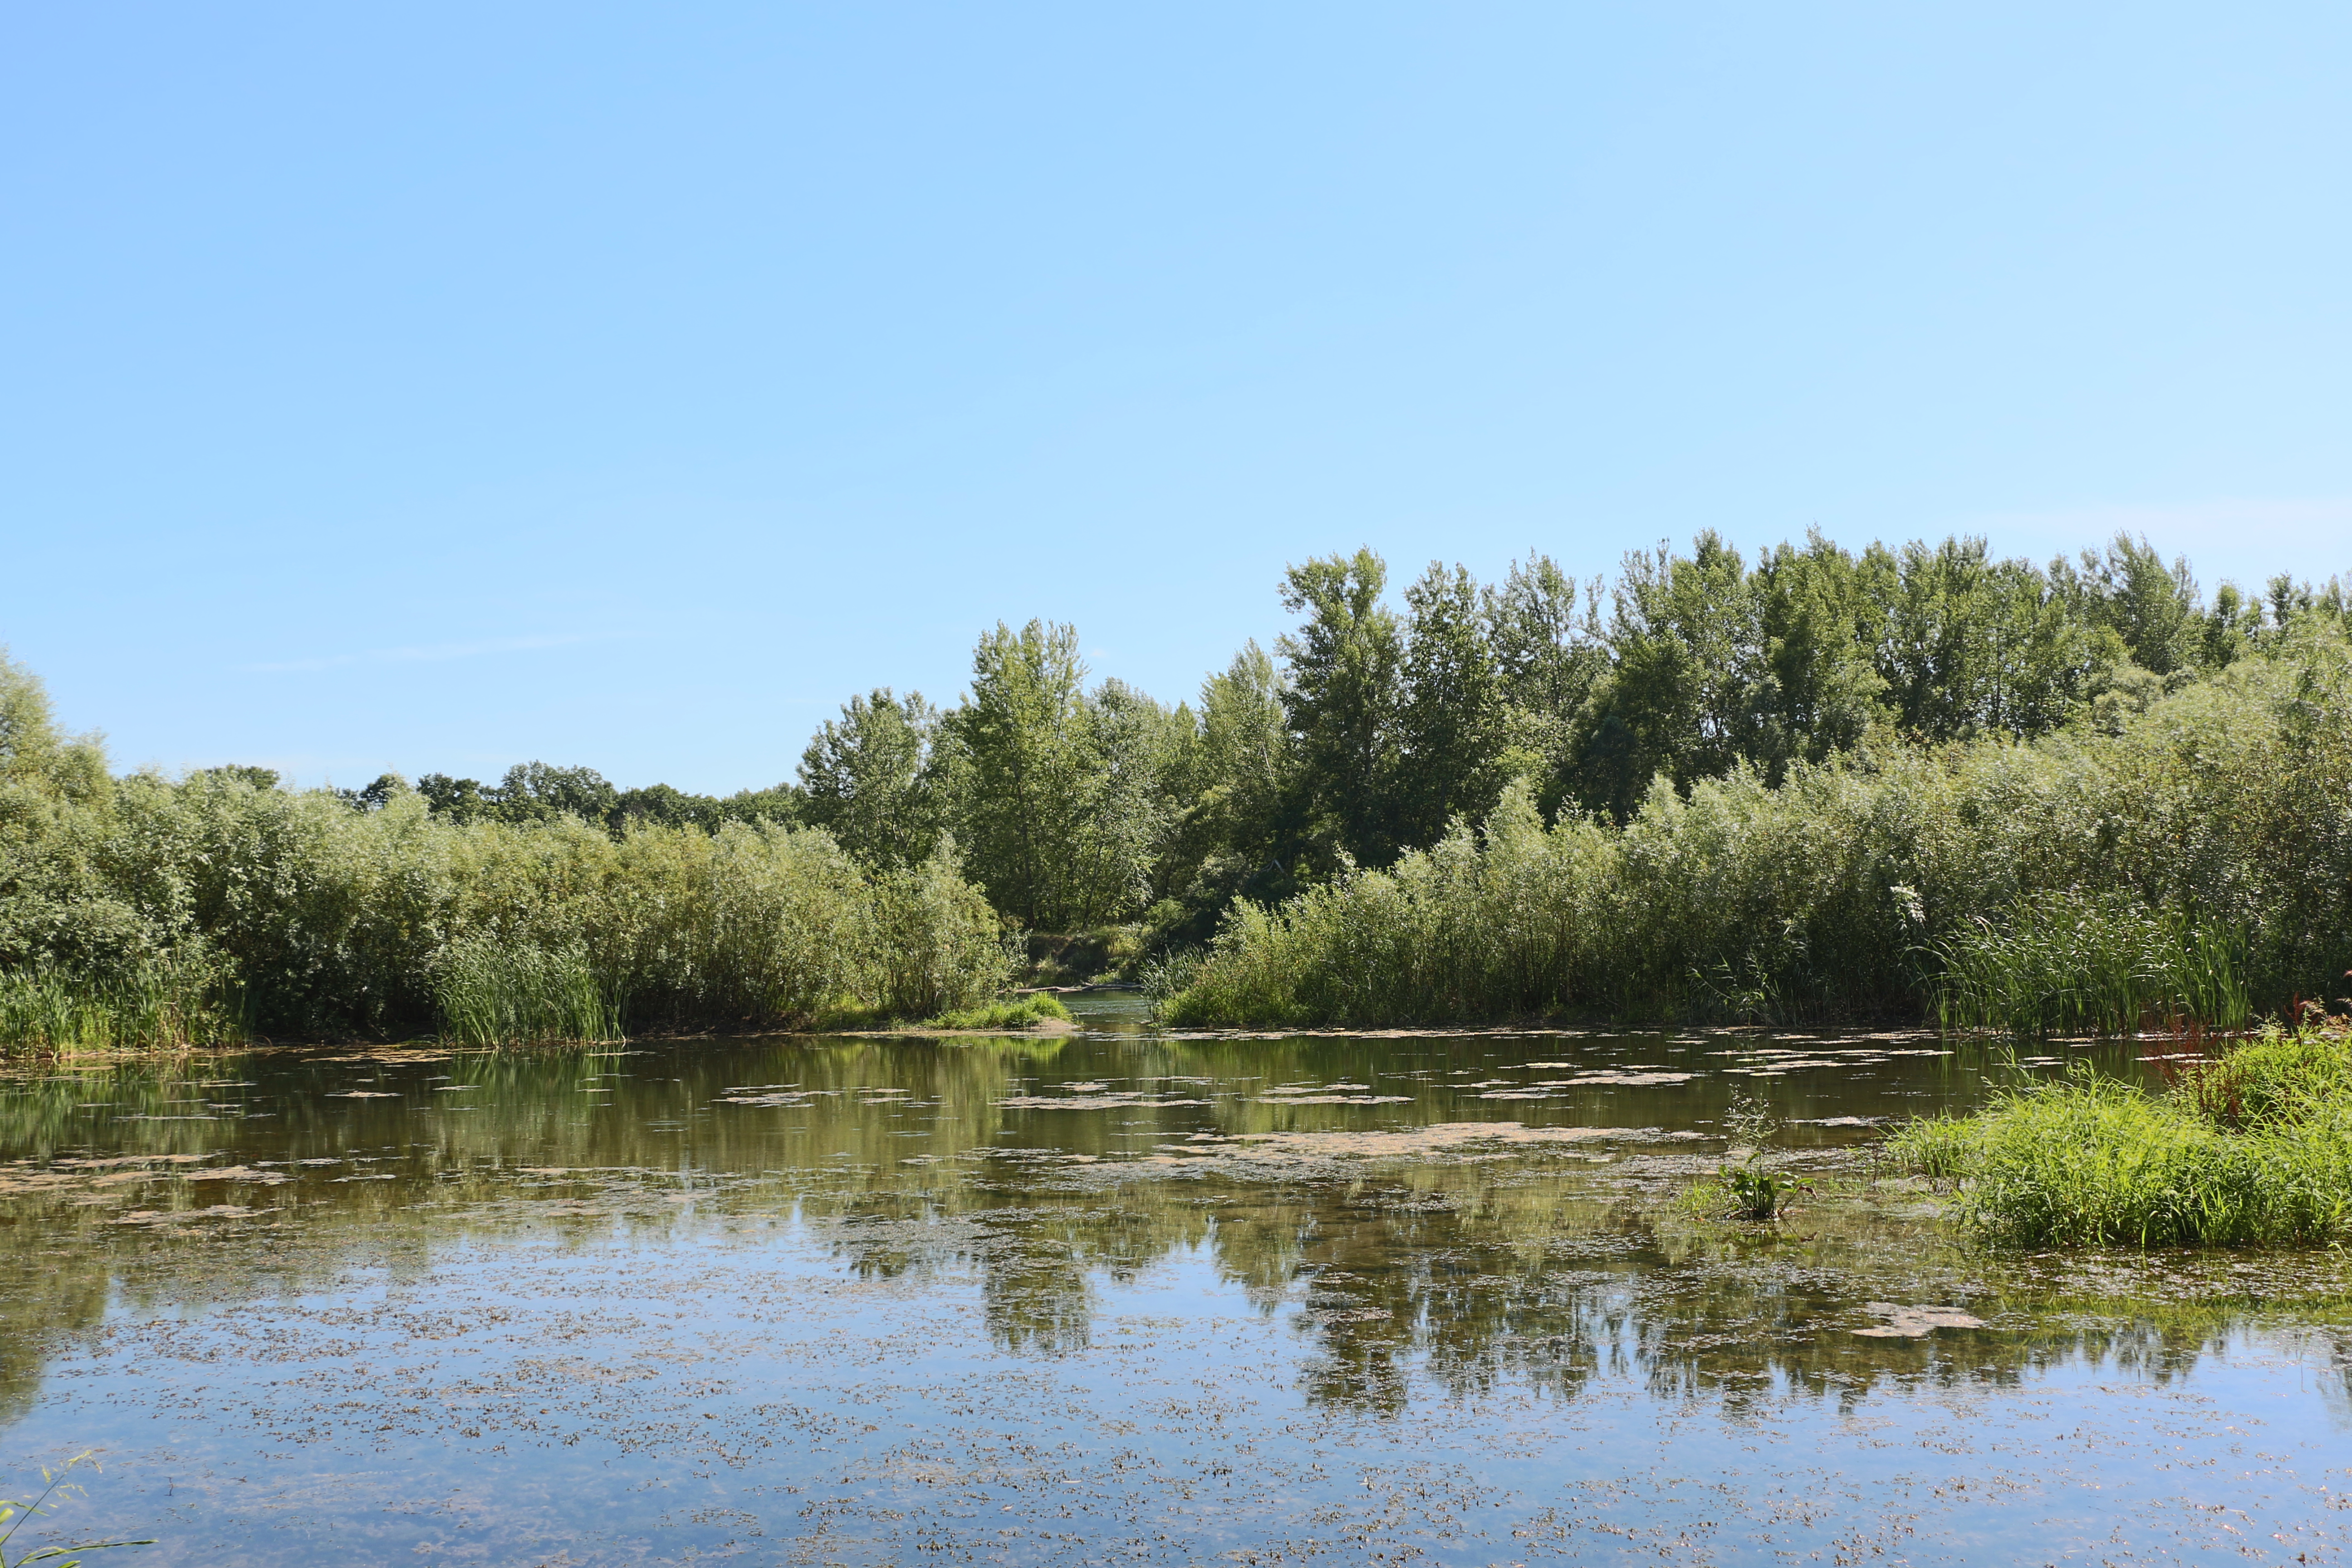  Apele Moldovei: Nivelul apei în Prut creşte, dar riscuri de inundații nu sunt